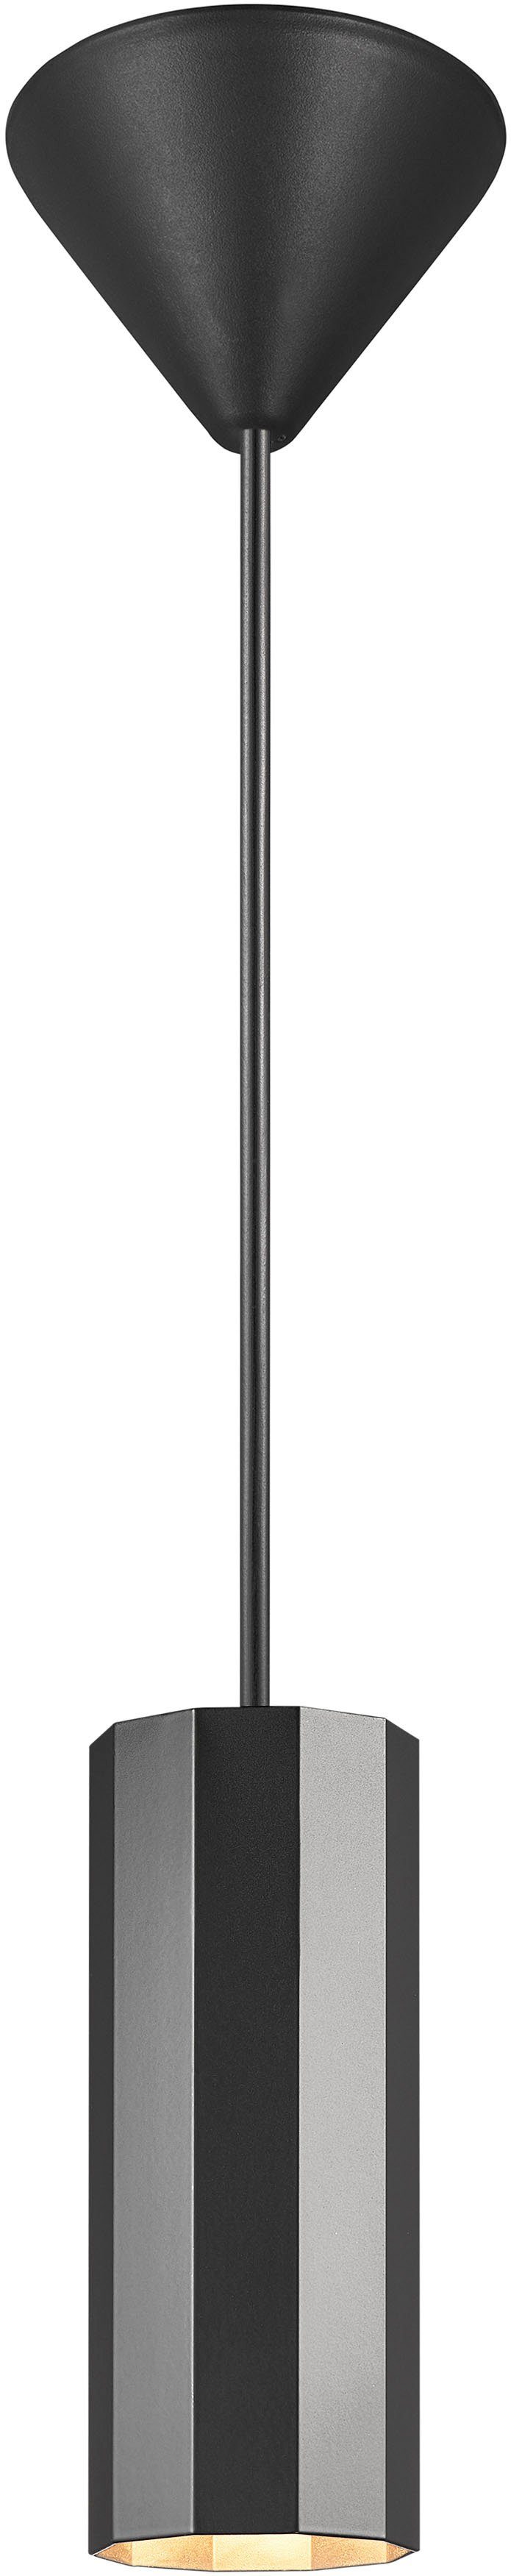 Nordlux Pendelleuchte Alanis, ohne Leuchtmittel, Minimalistisches Design, 10-seitiges Profil, matter Messing-Look | Pendelleuchten